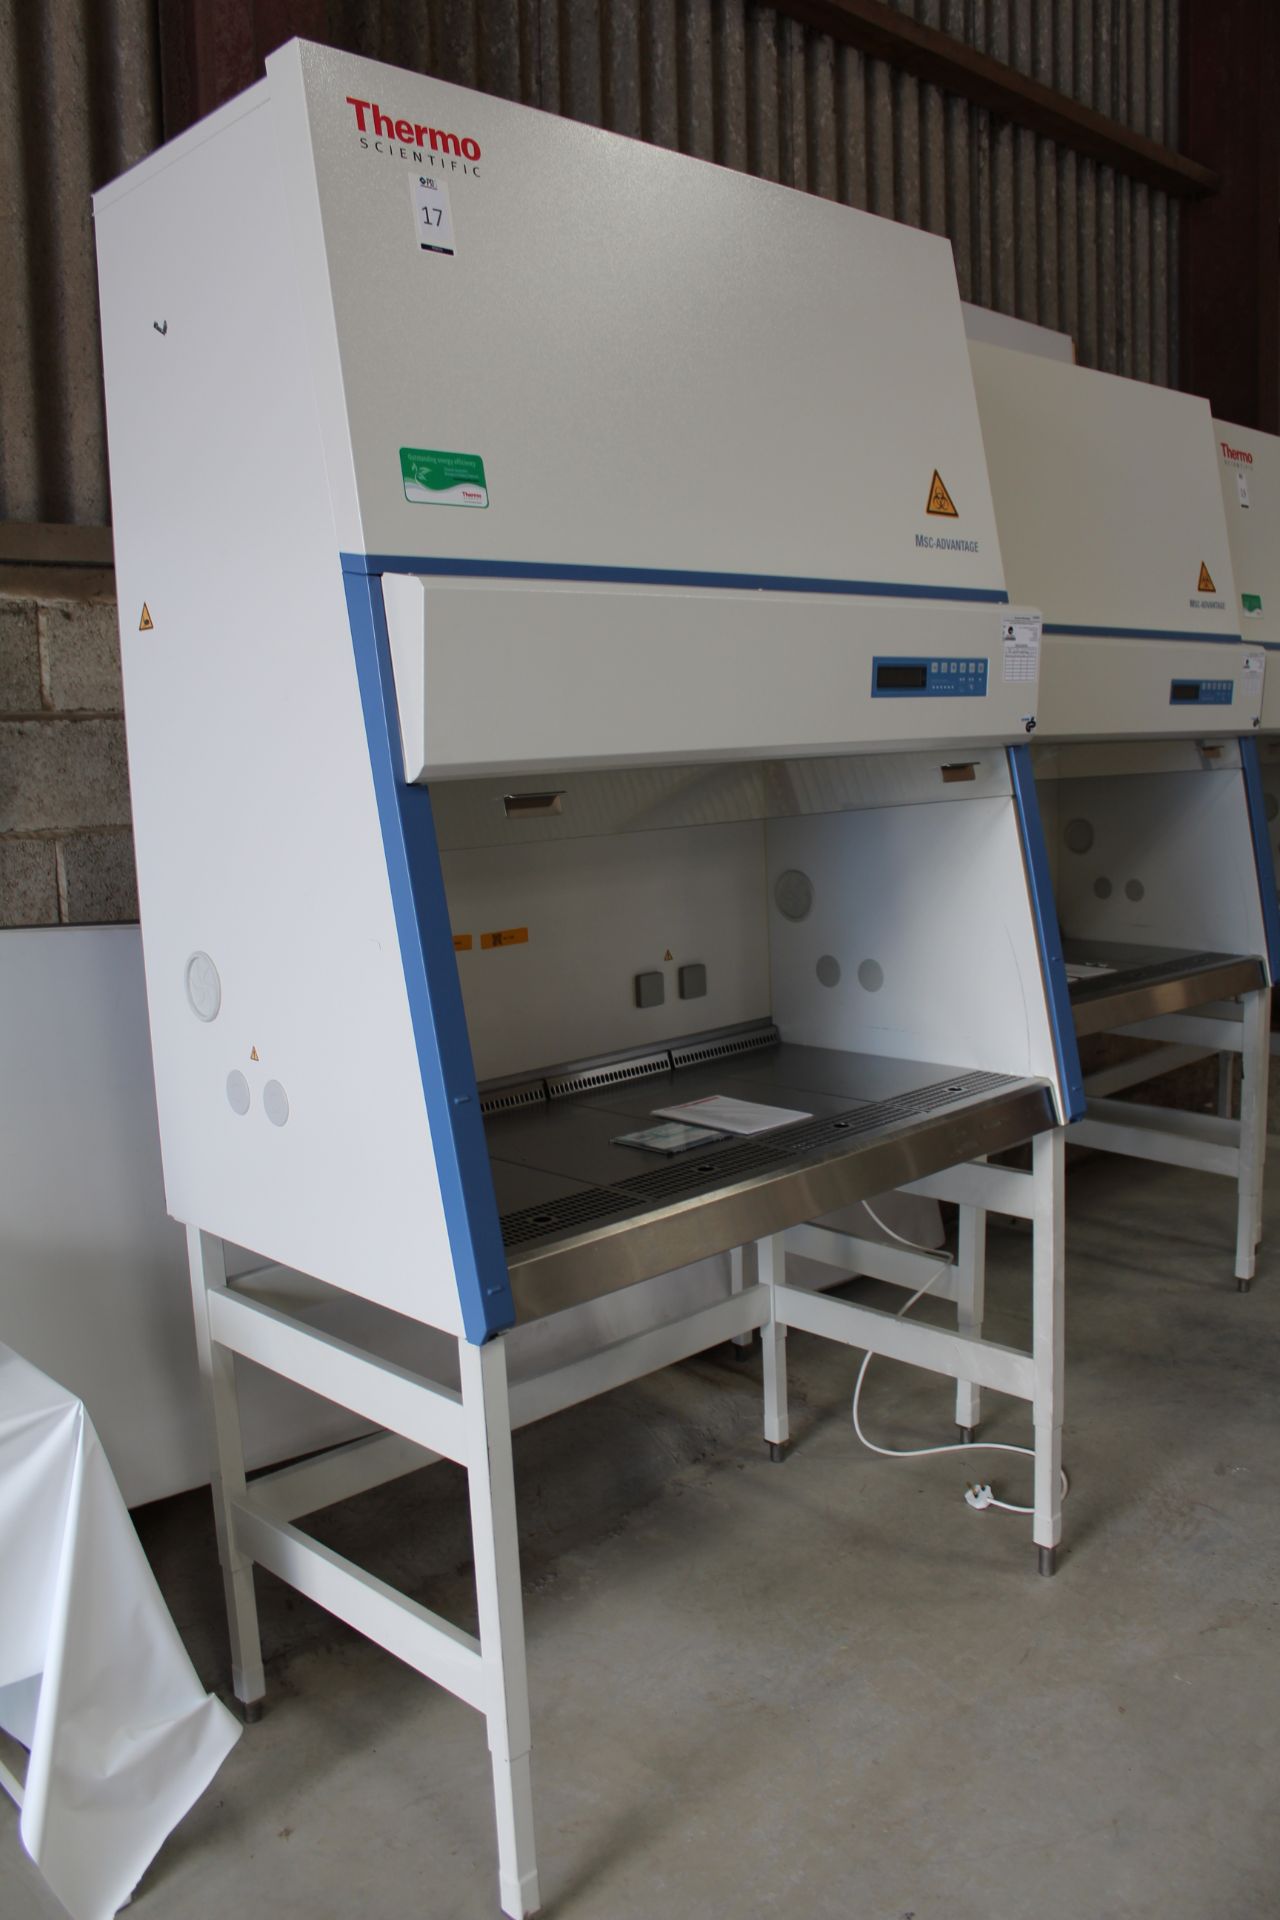 Thermo Scientific MSC-Advantage 1.2 Bio Safety Cabinet. SN# 42662072 (July 2020) (Location: